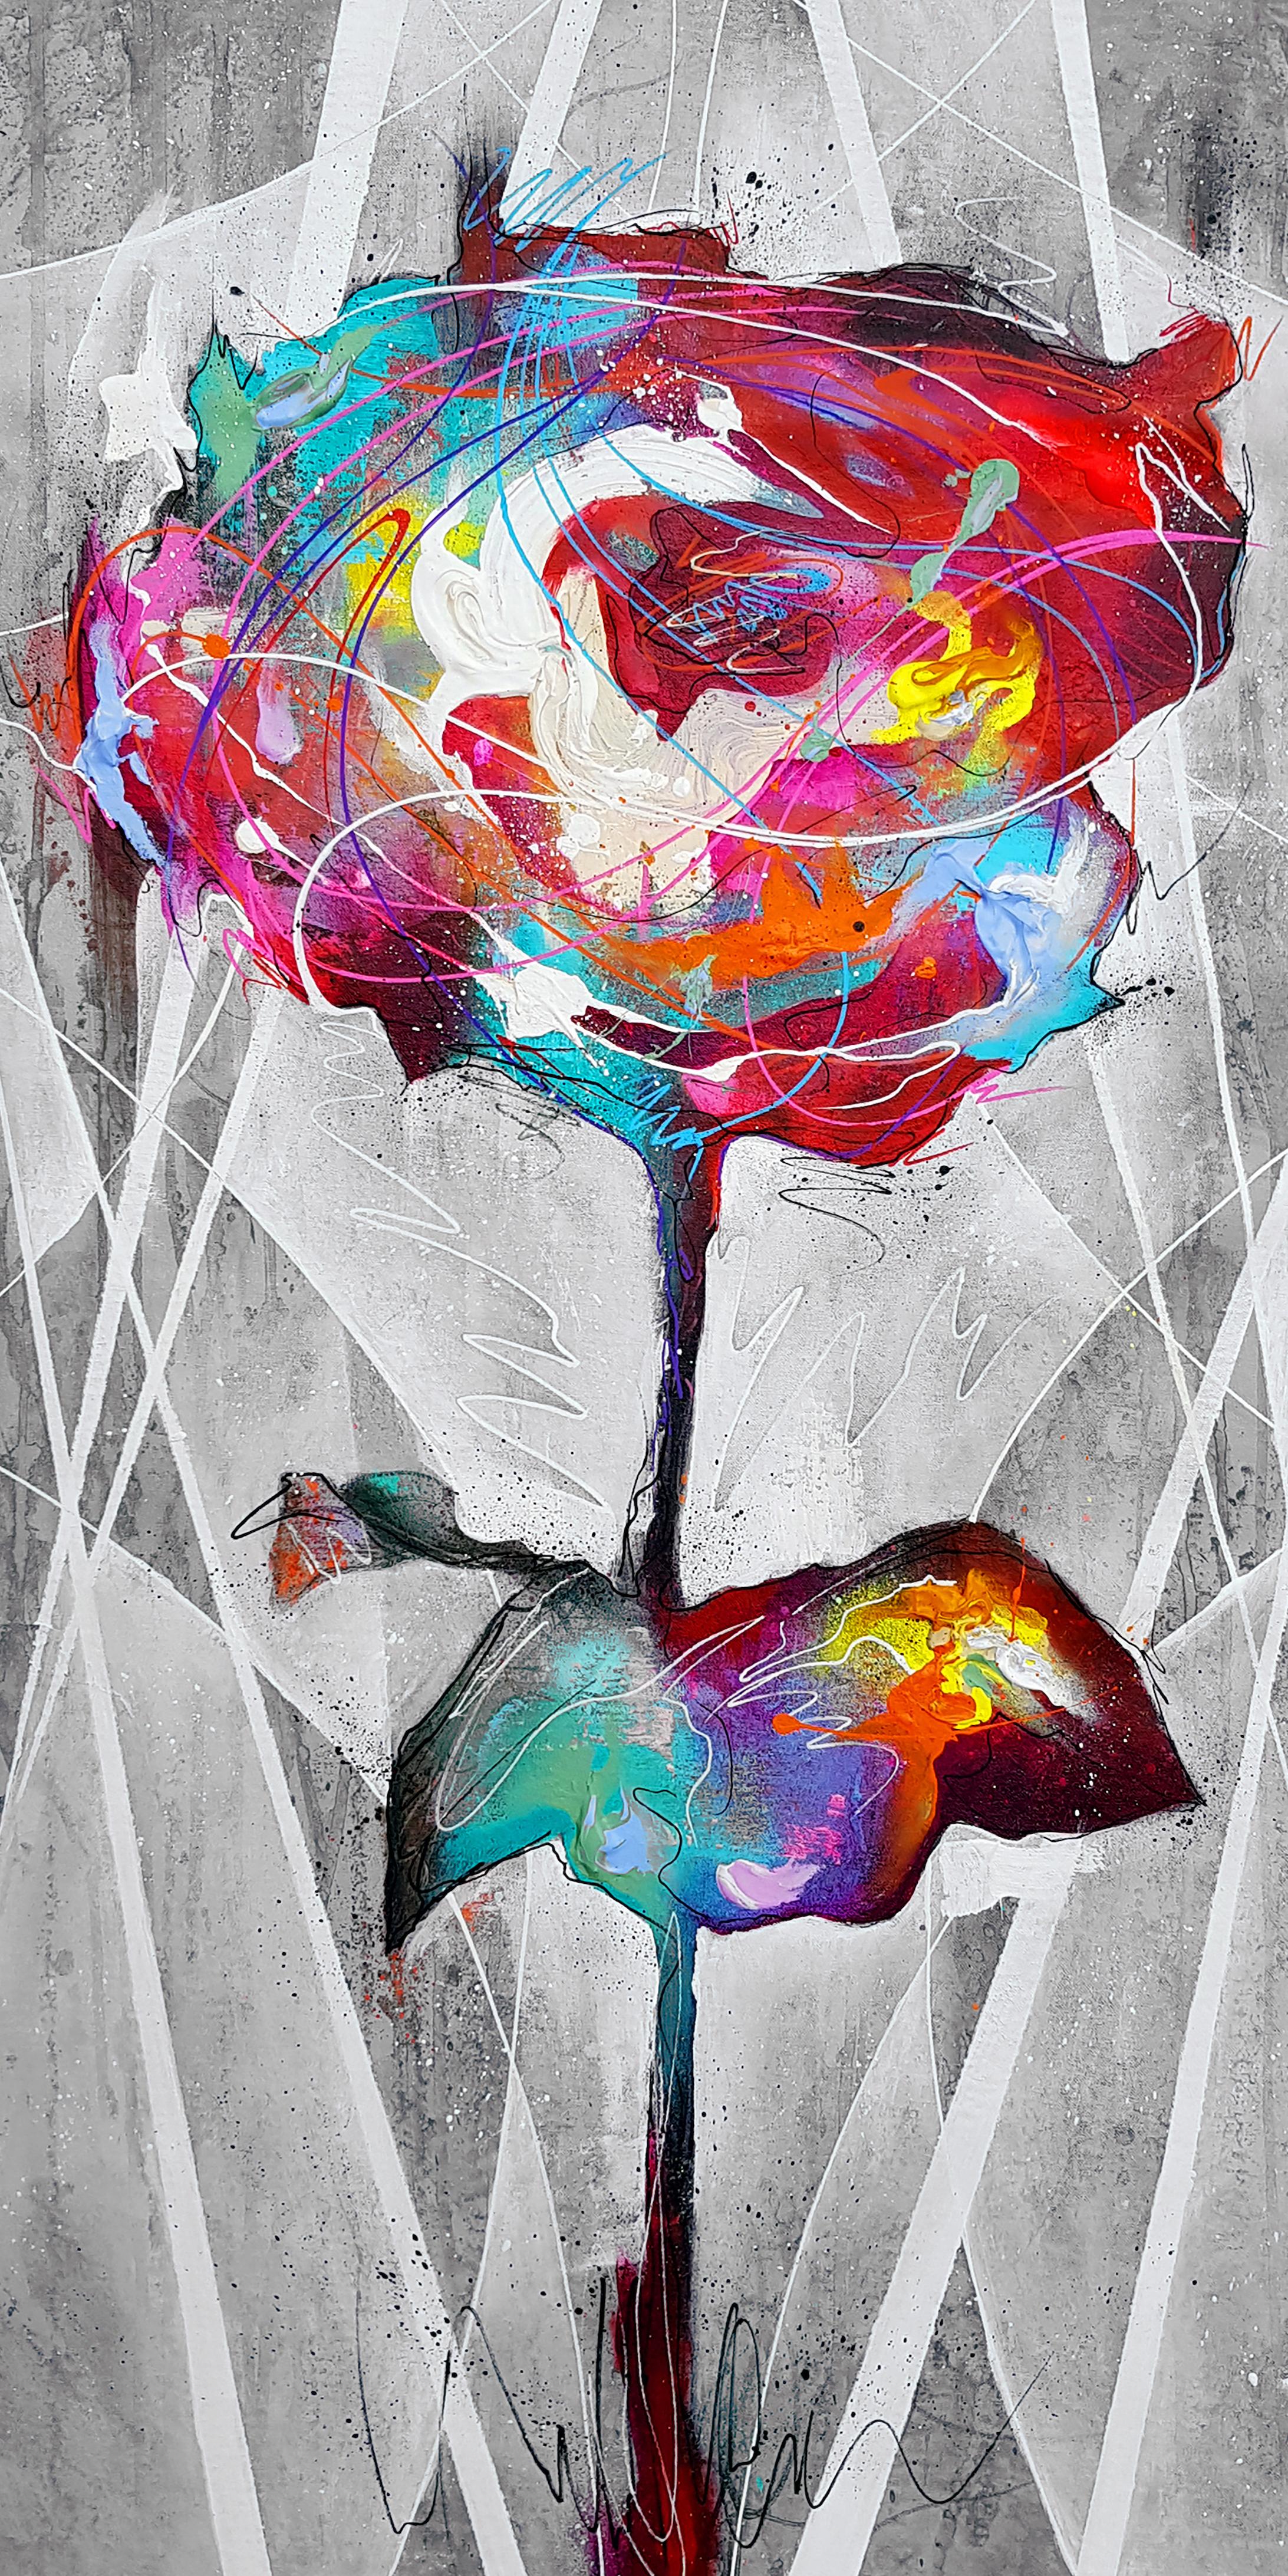 Rose - 21. Jahrhundert, Zeitgenössische Malerei, Graffiti, Blume, Gemischte Medien